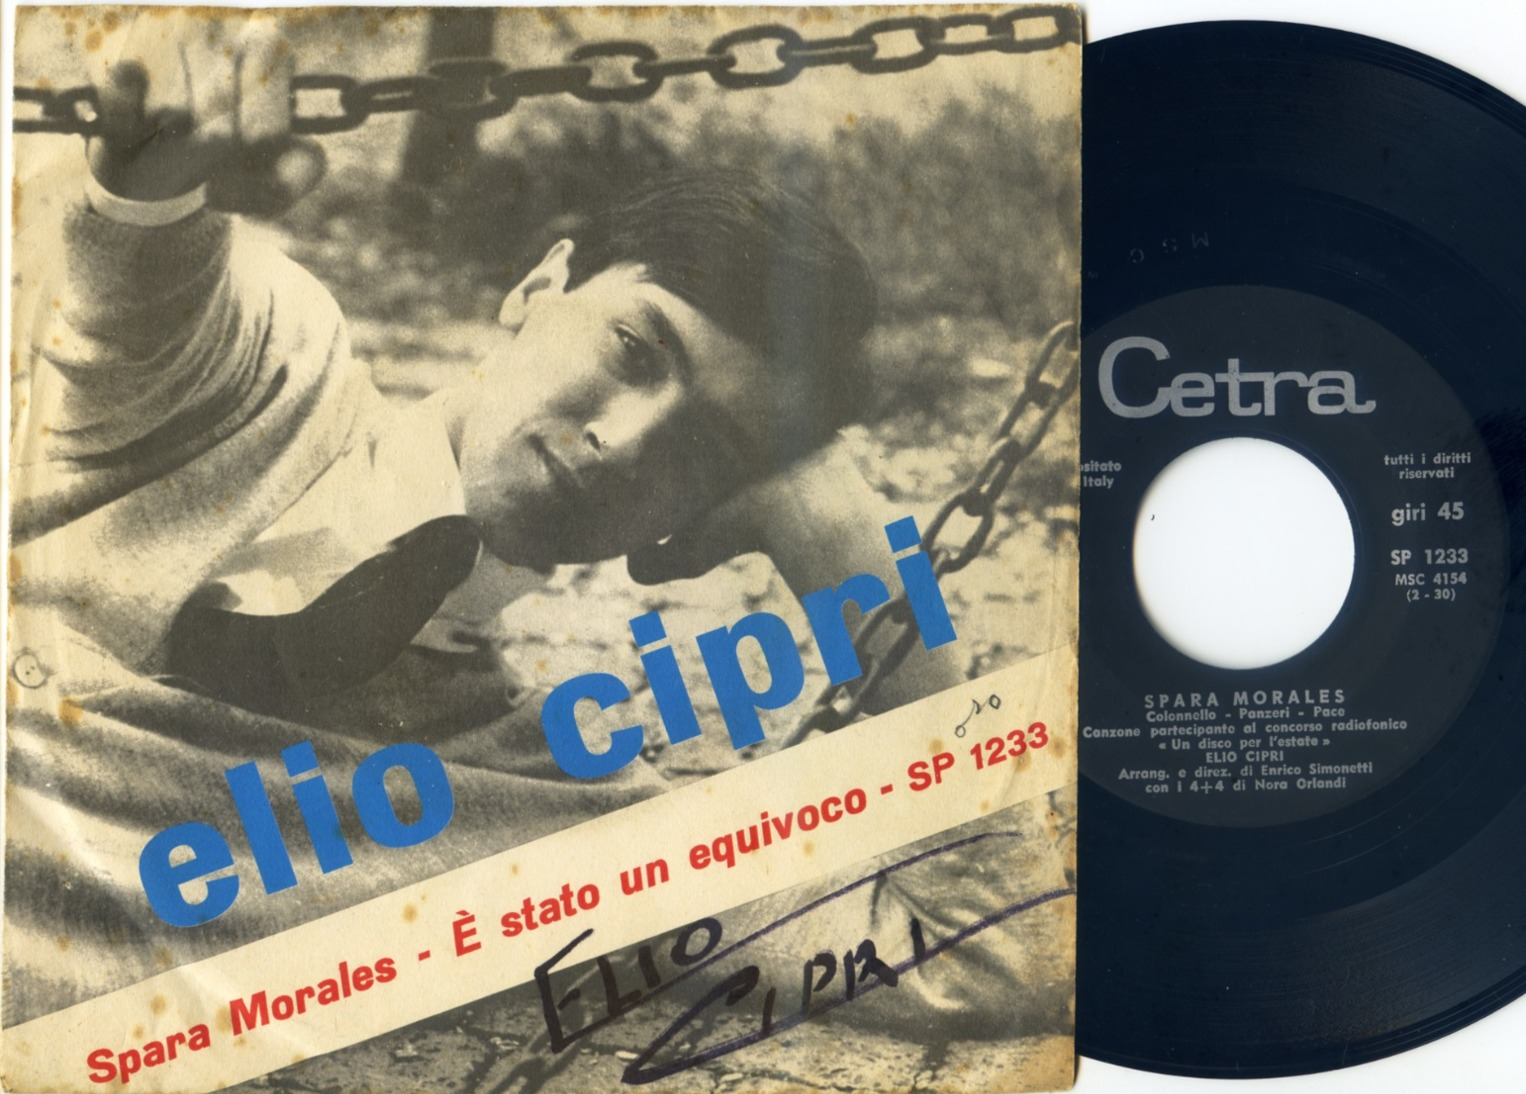 ELIO CIPRI : 45 Originale Italiano : < Spara Morales > = 1964 = Autografato - Collectors